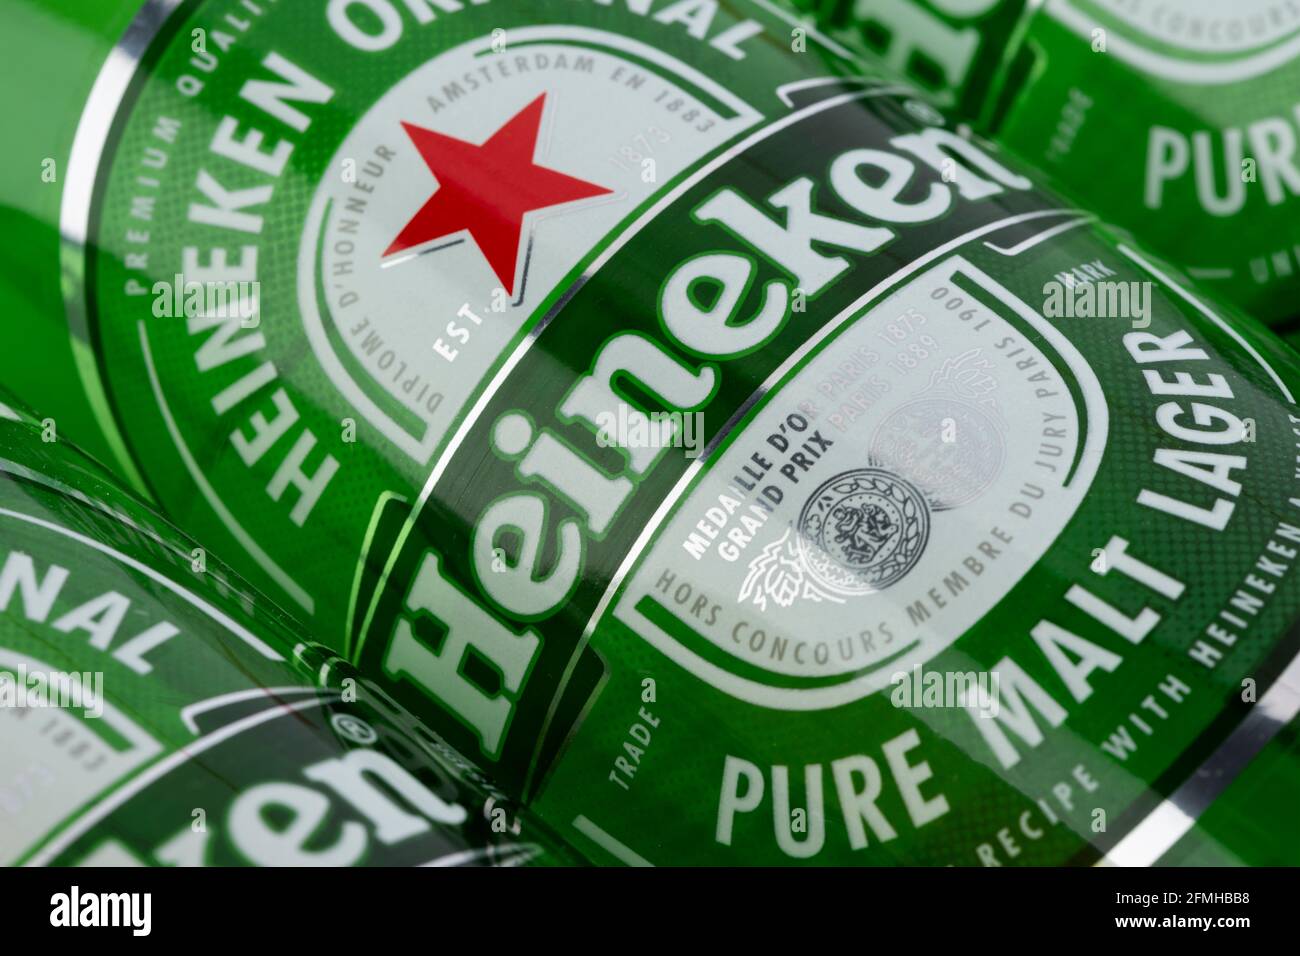 Il logo del marchio olandese Heineken è riportato su un'etichetta di una delle bottiglie di birra dell'azienda. Foto Stock